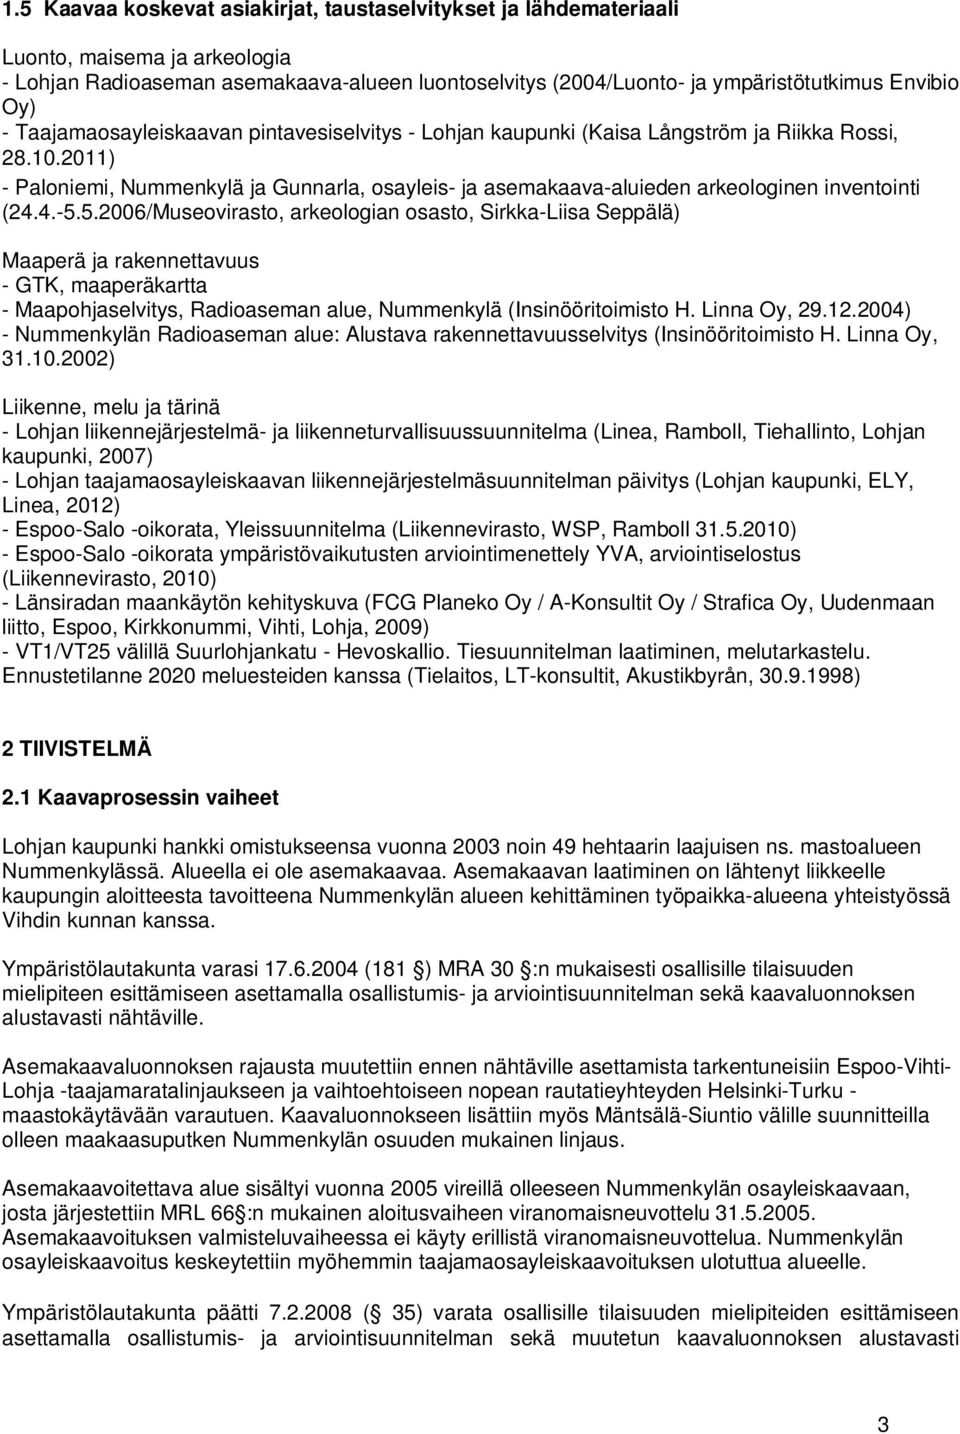 2011) - Paloniemi, Nummenkylä ja Gunnarla, osayleis- ja asemakaava-aluieden arkeologinen inventointi (24.4.-5.